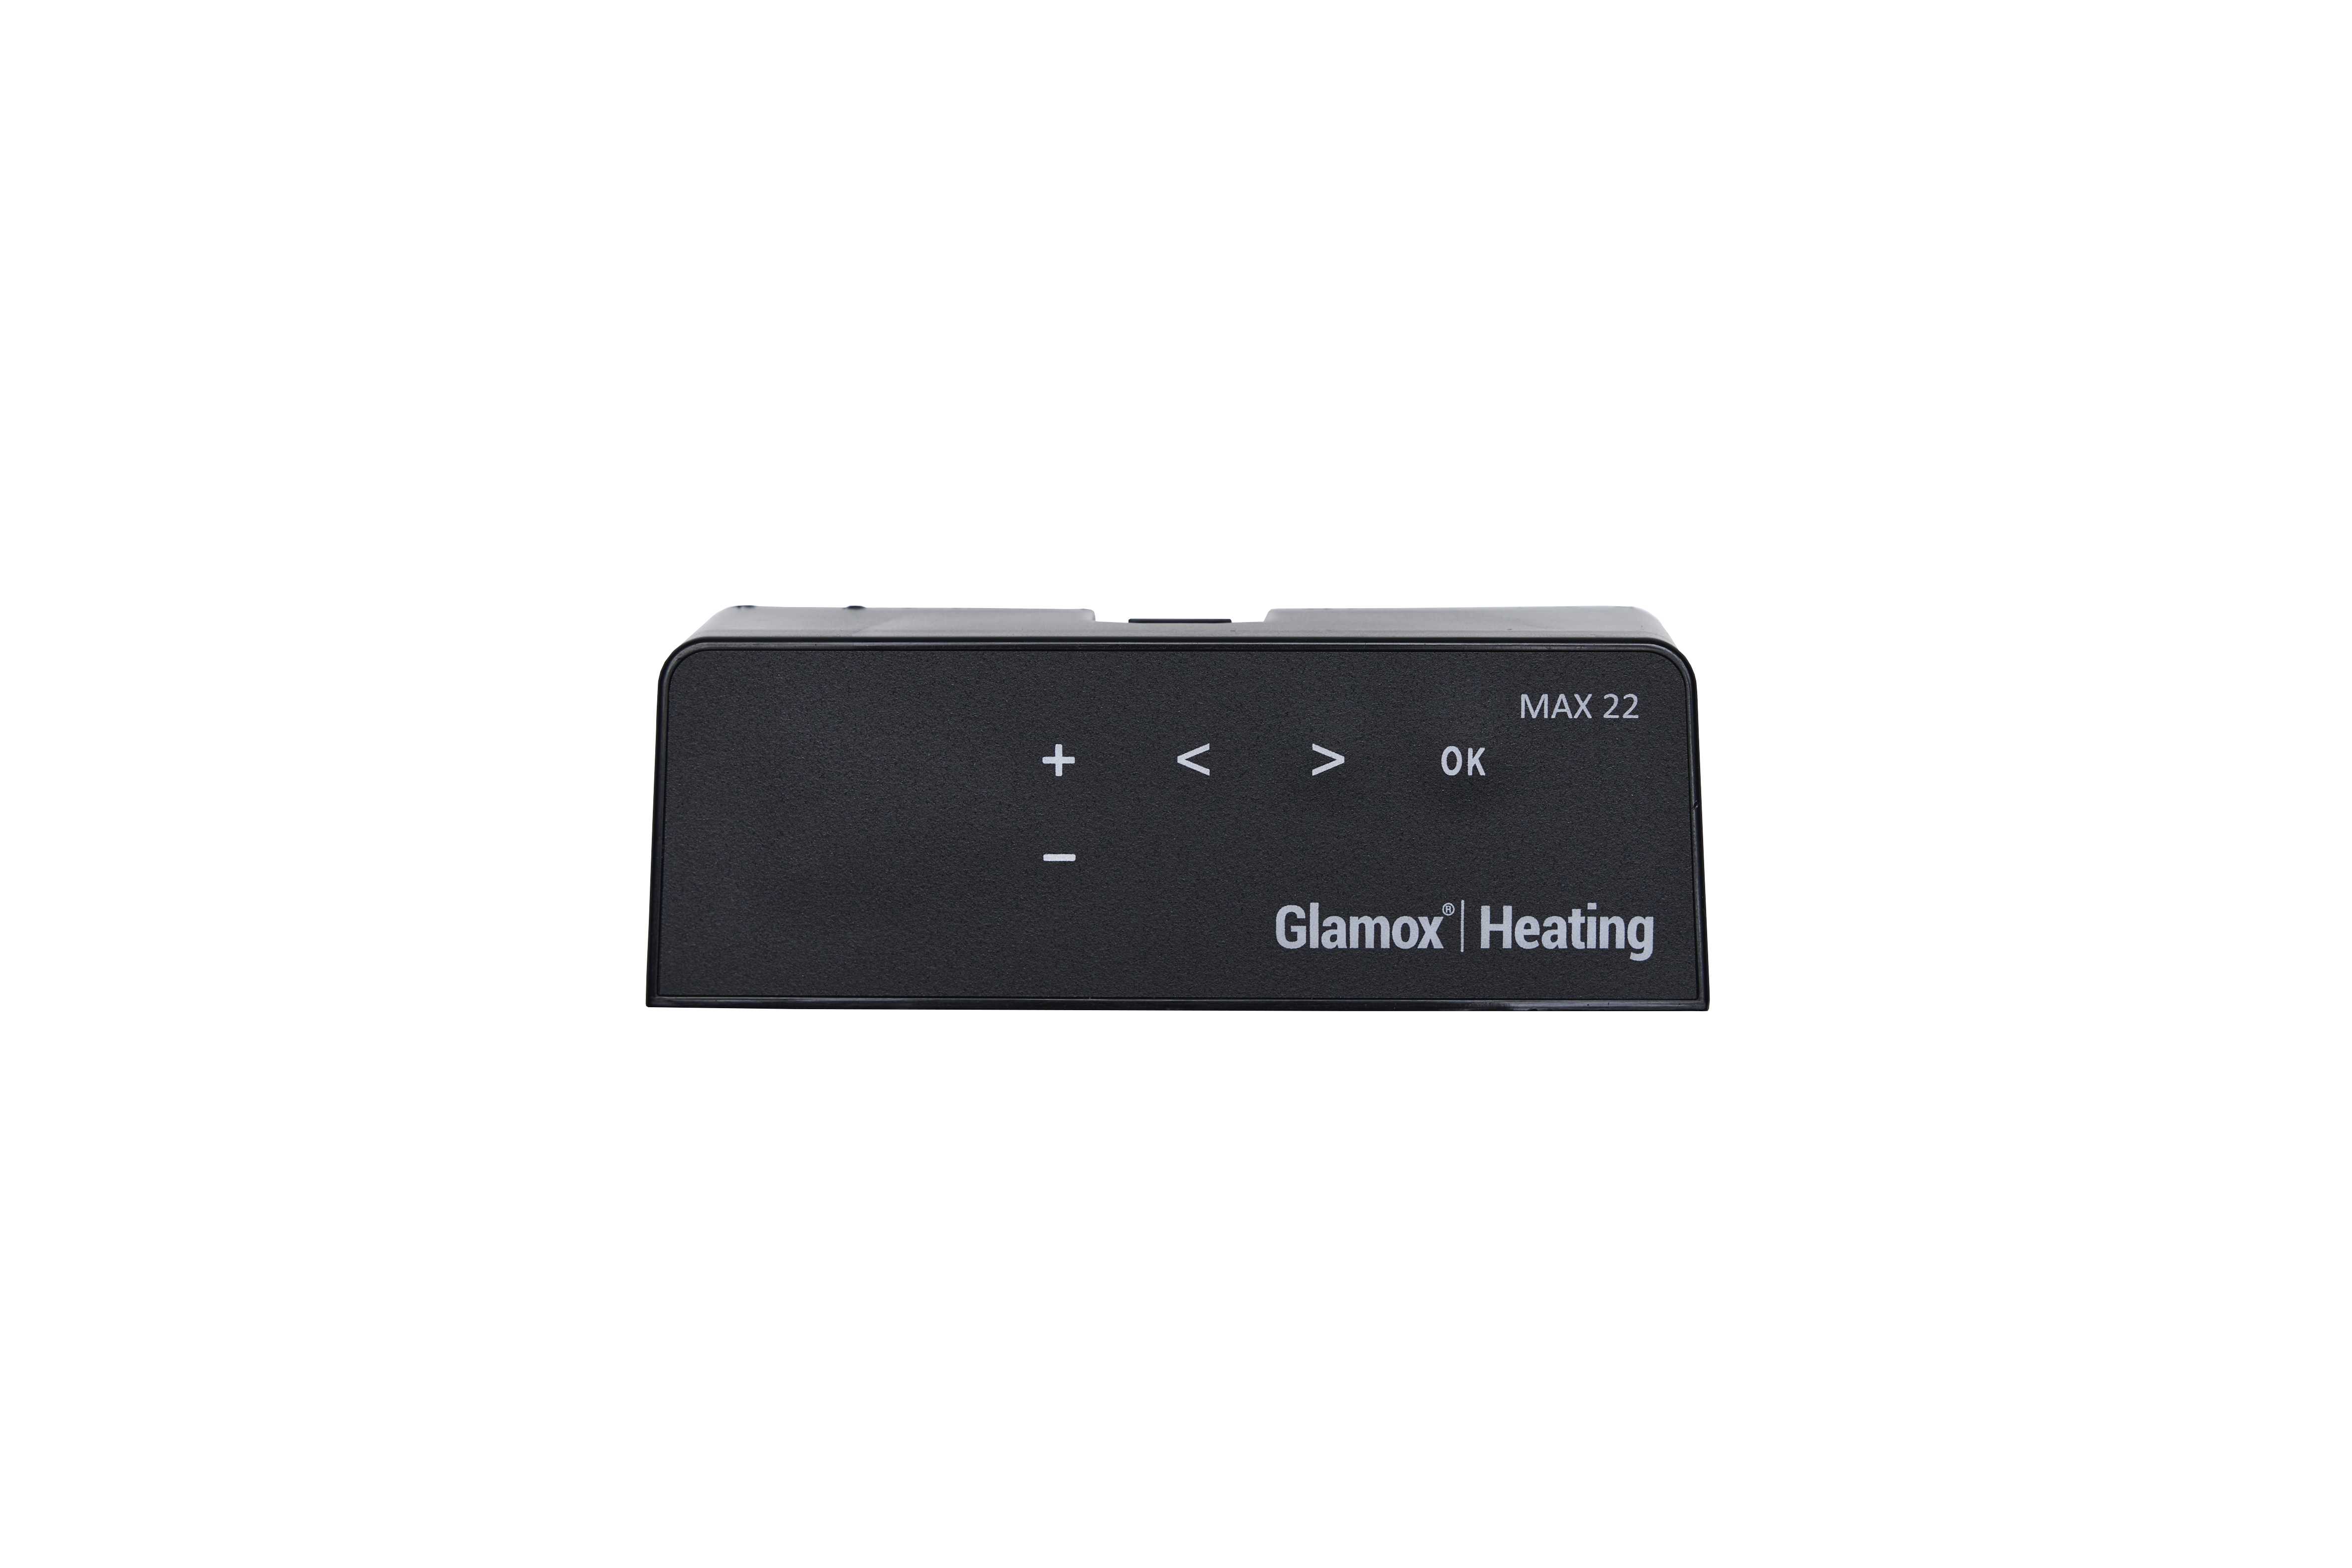 Glamox Heating - TERMOSTAT MAX 22 GRADER SORT H40 / H60 DT 220-400V -910053